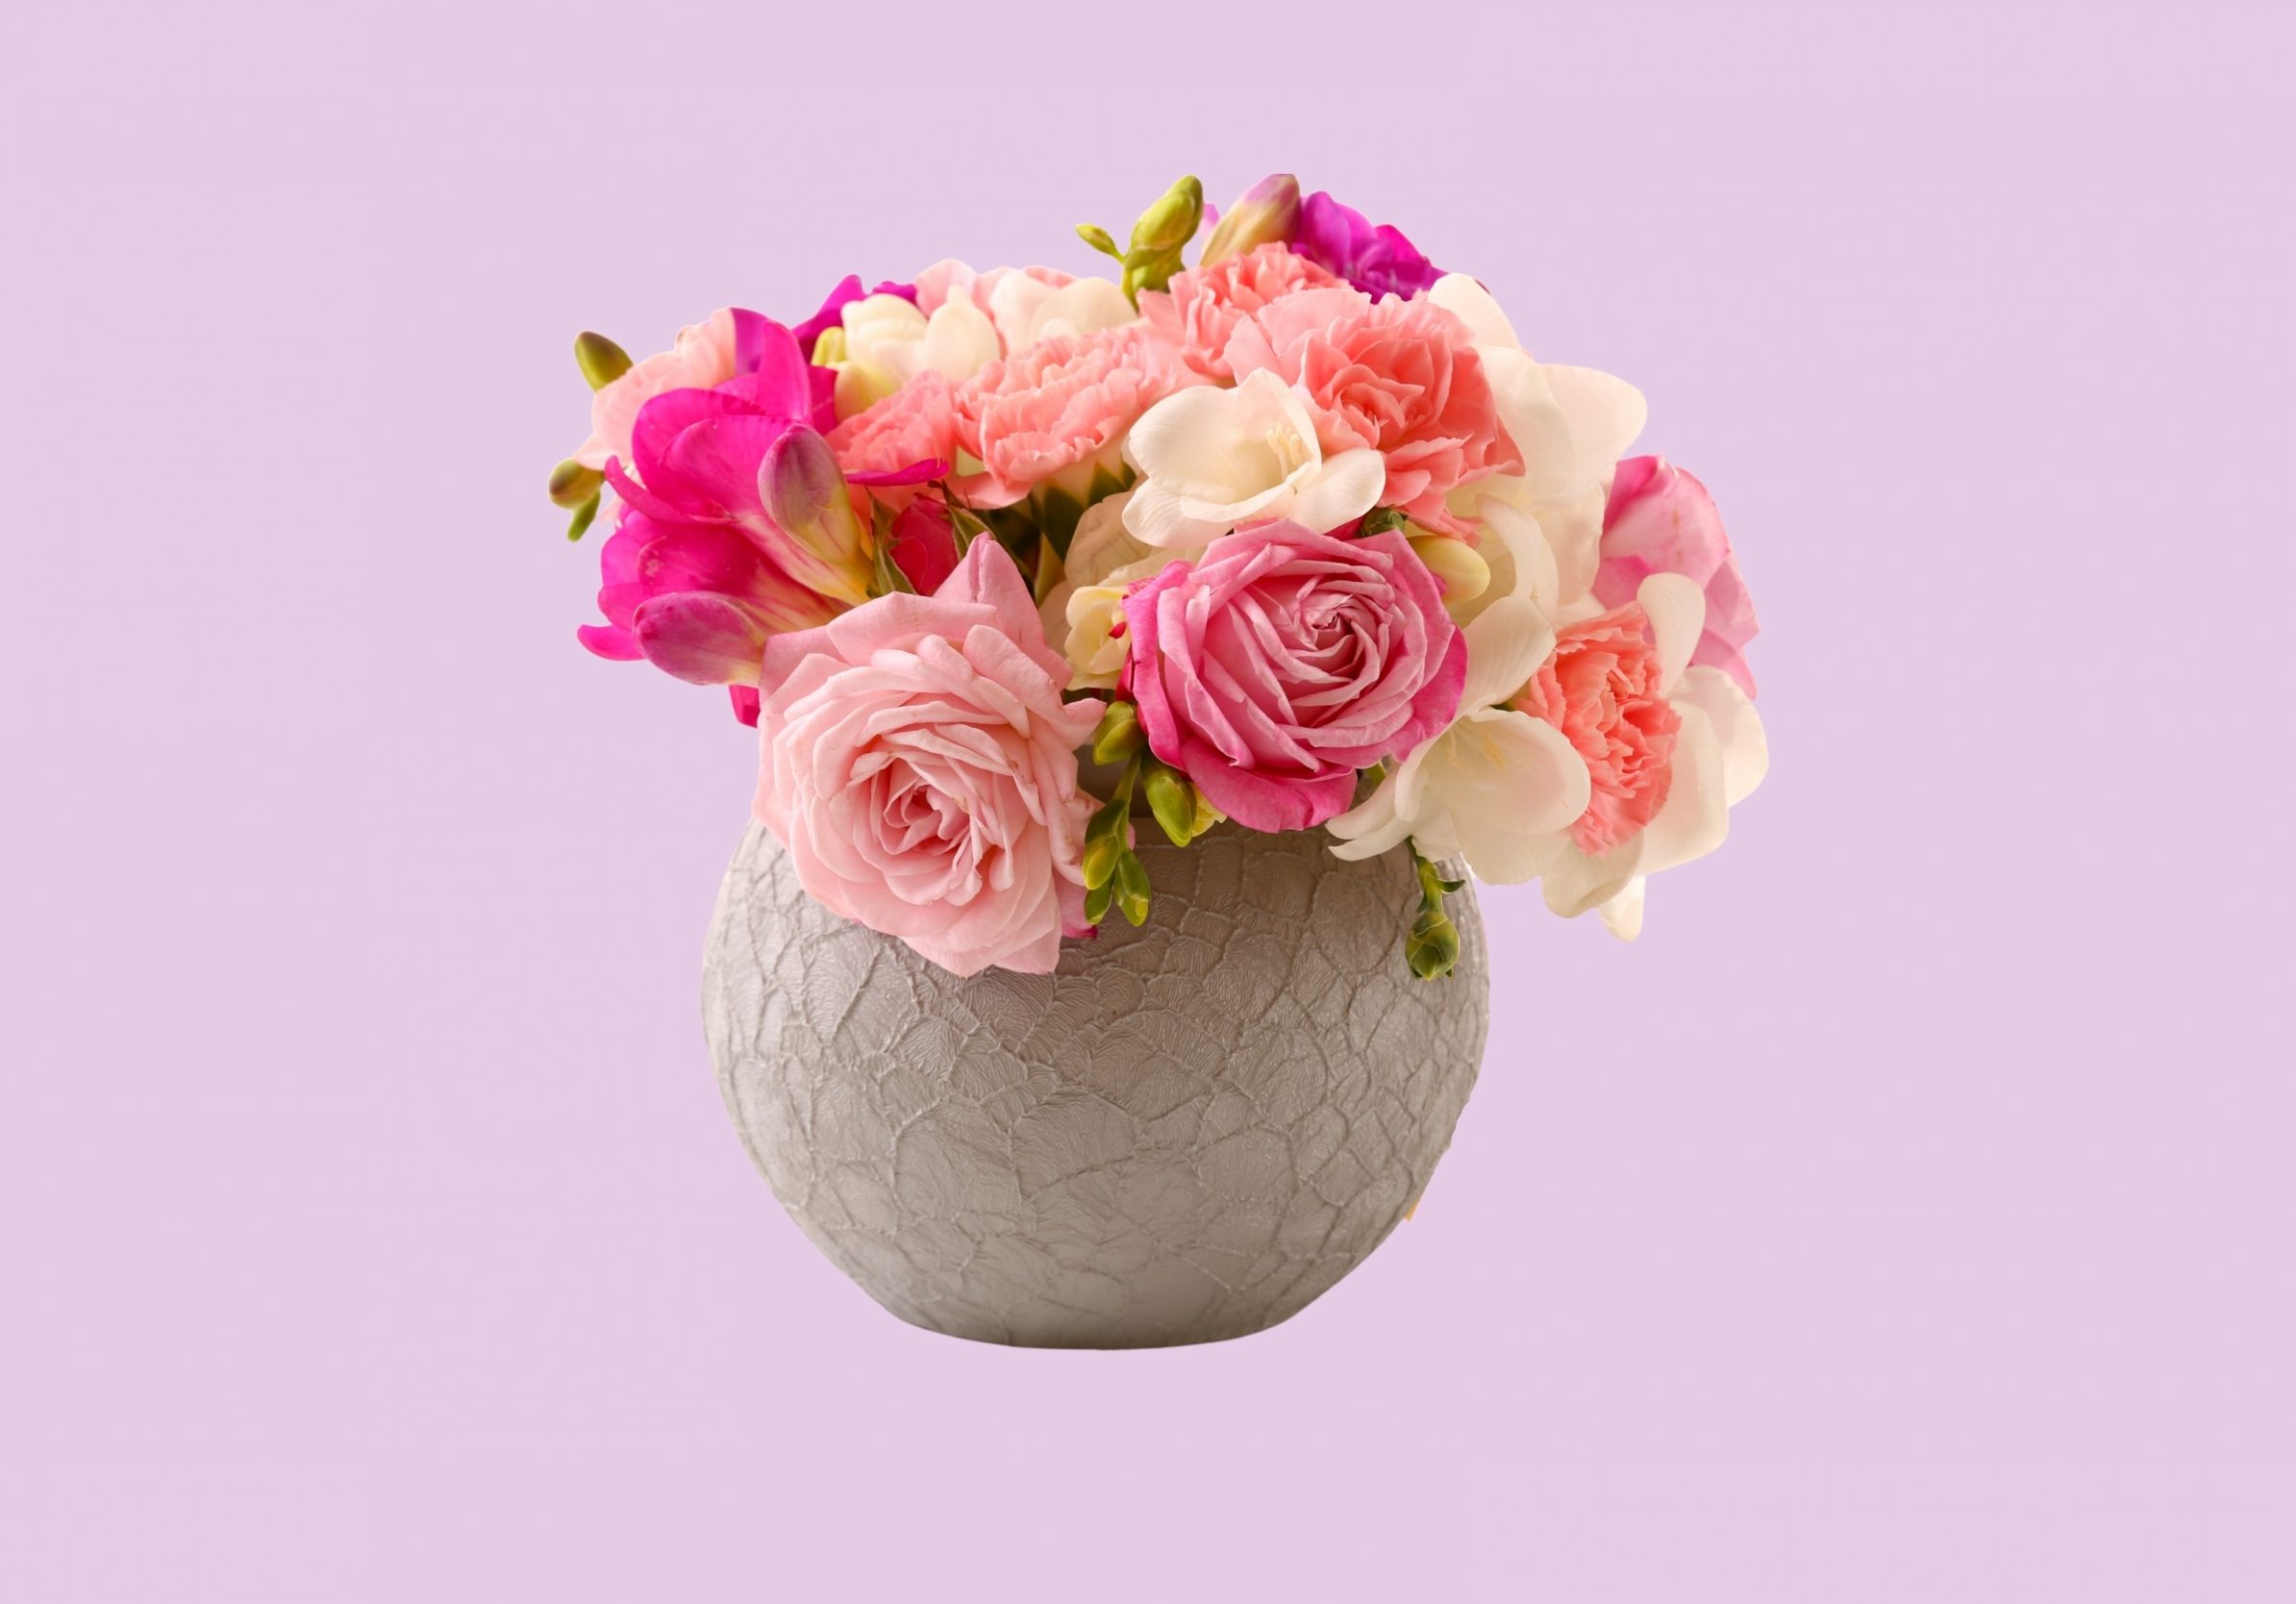 2388x1668 iPad Pro wallpapers Vase Pink Roses Floral Pot iPad Wallpaper 2388x1668 pixels resolution